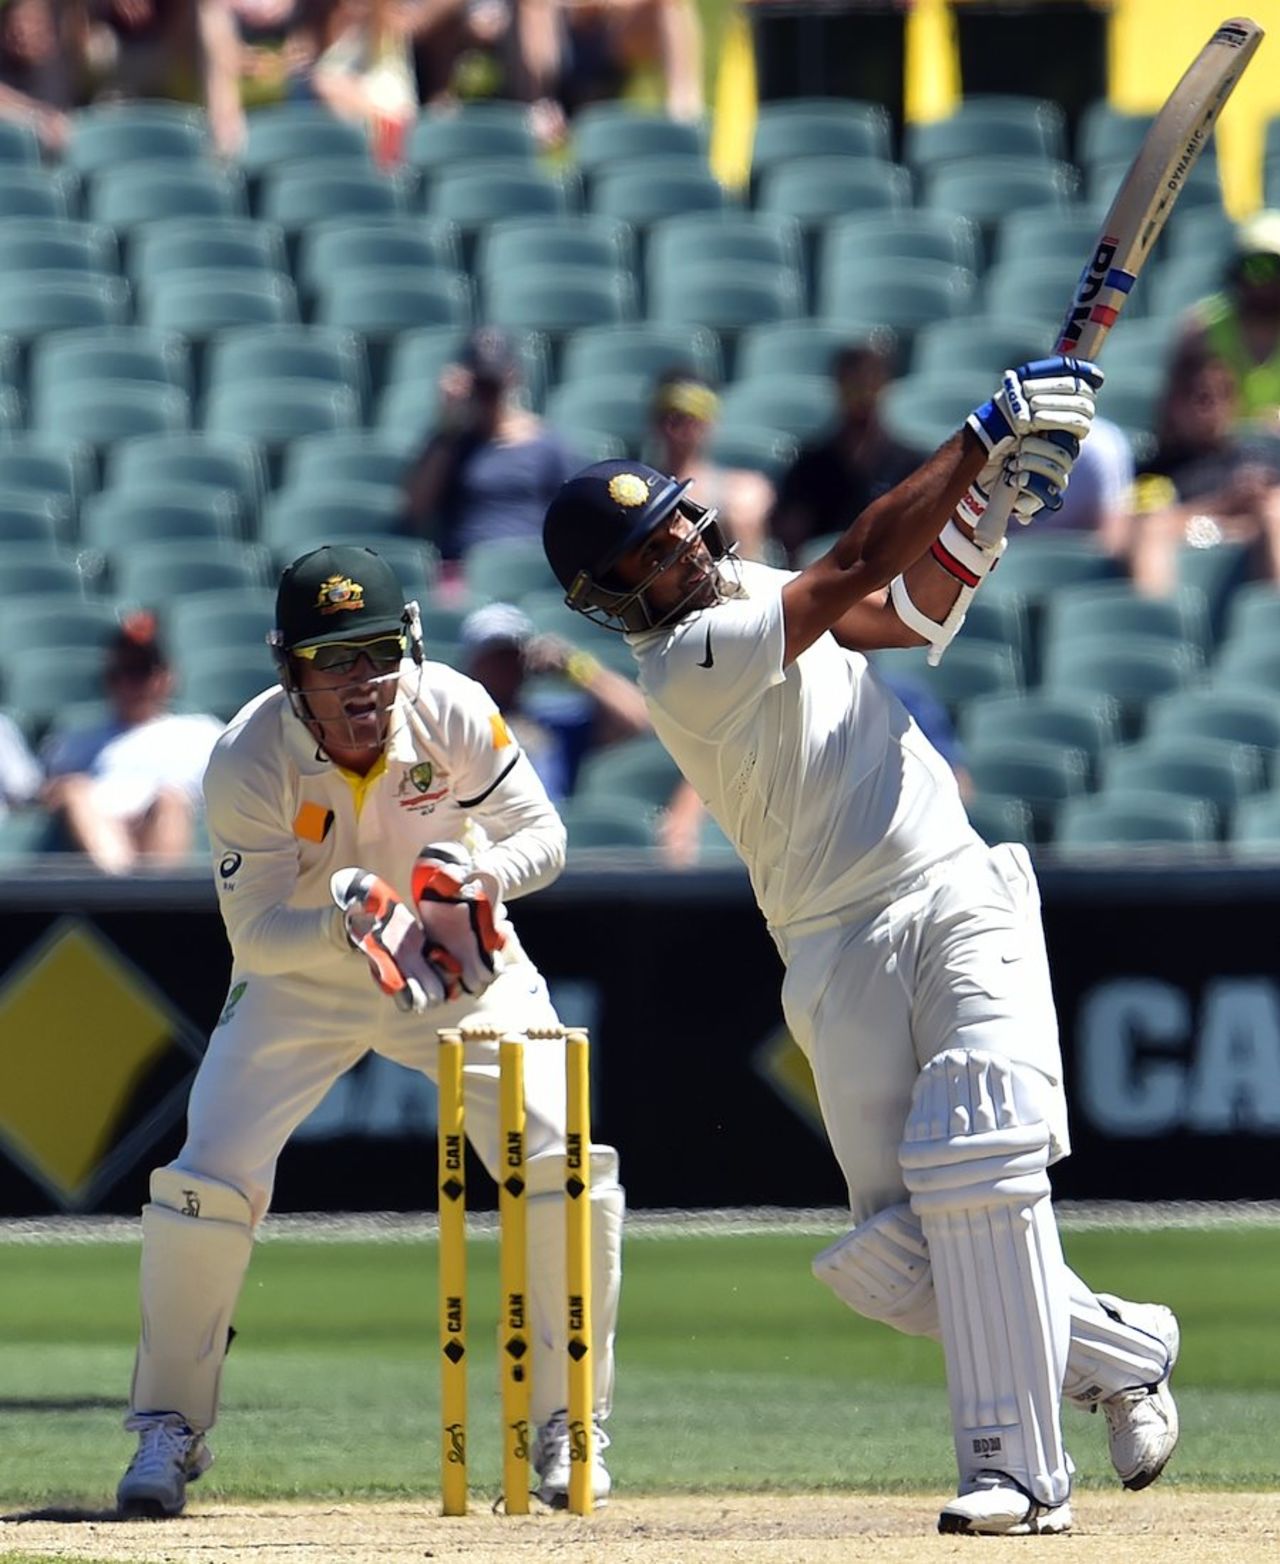 Mohammed Shami slogs, Australia v India, 1st Test, Adelaide, 4th day, December 12, 2014